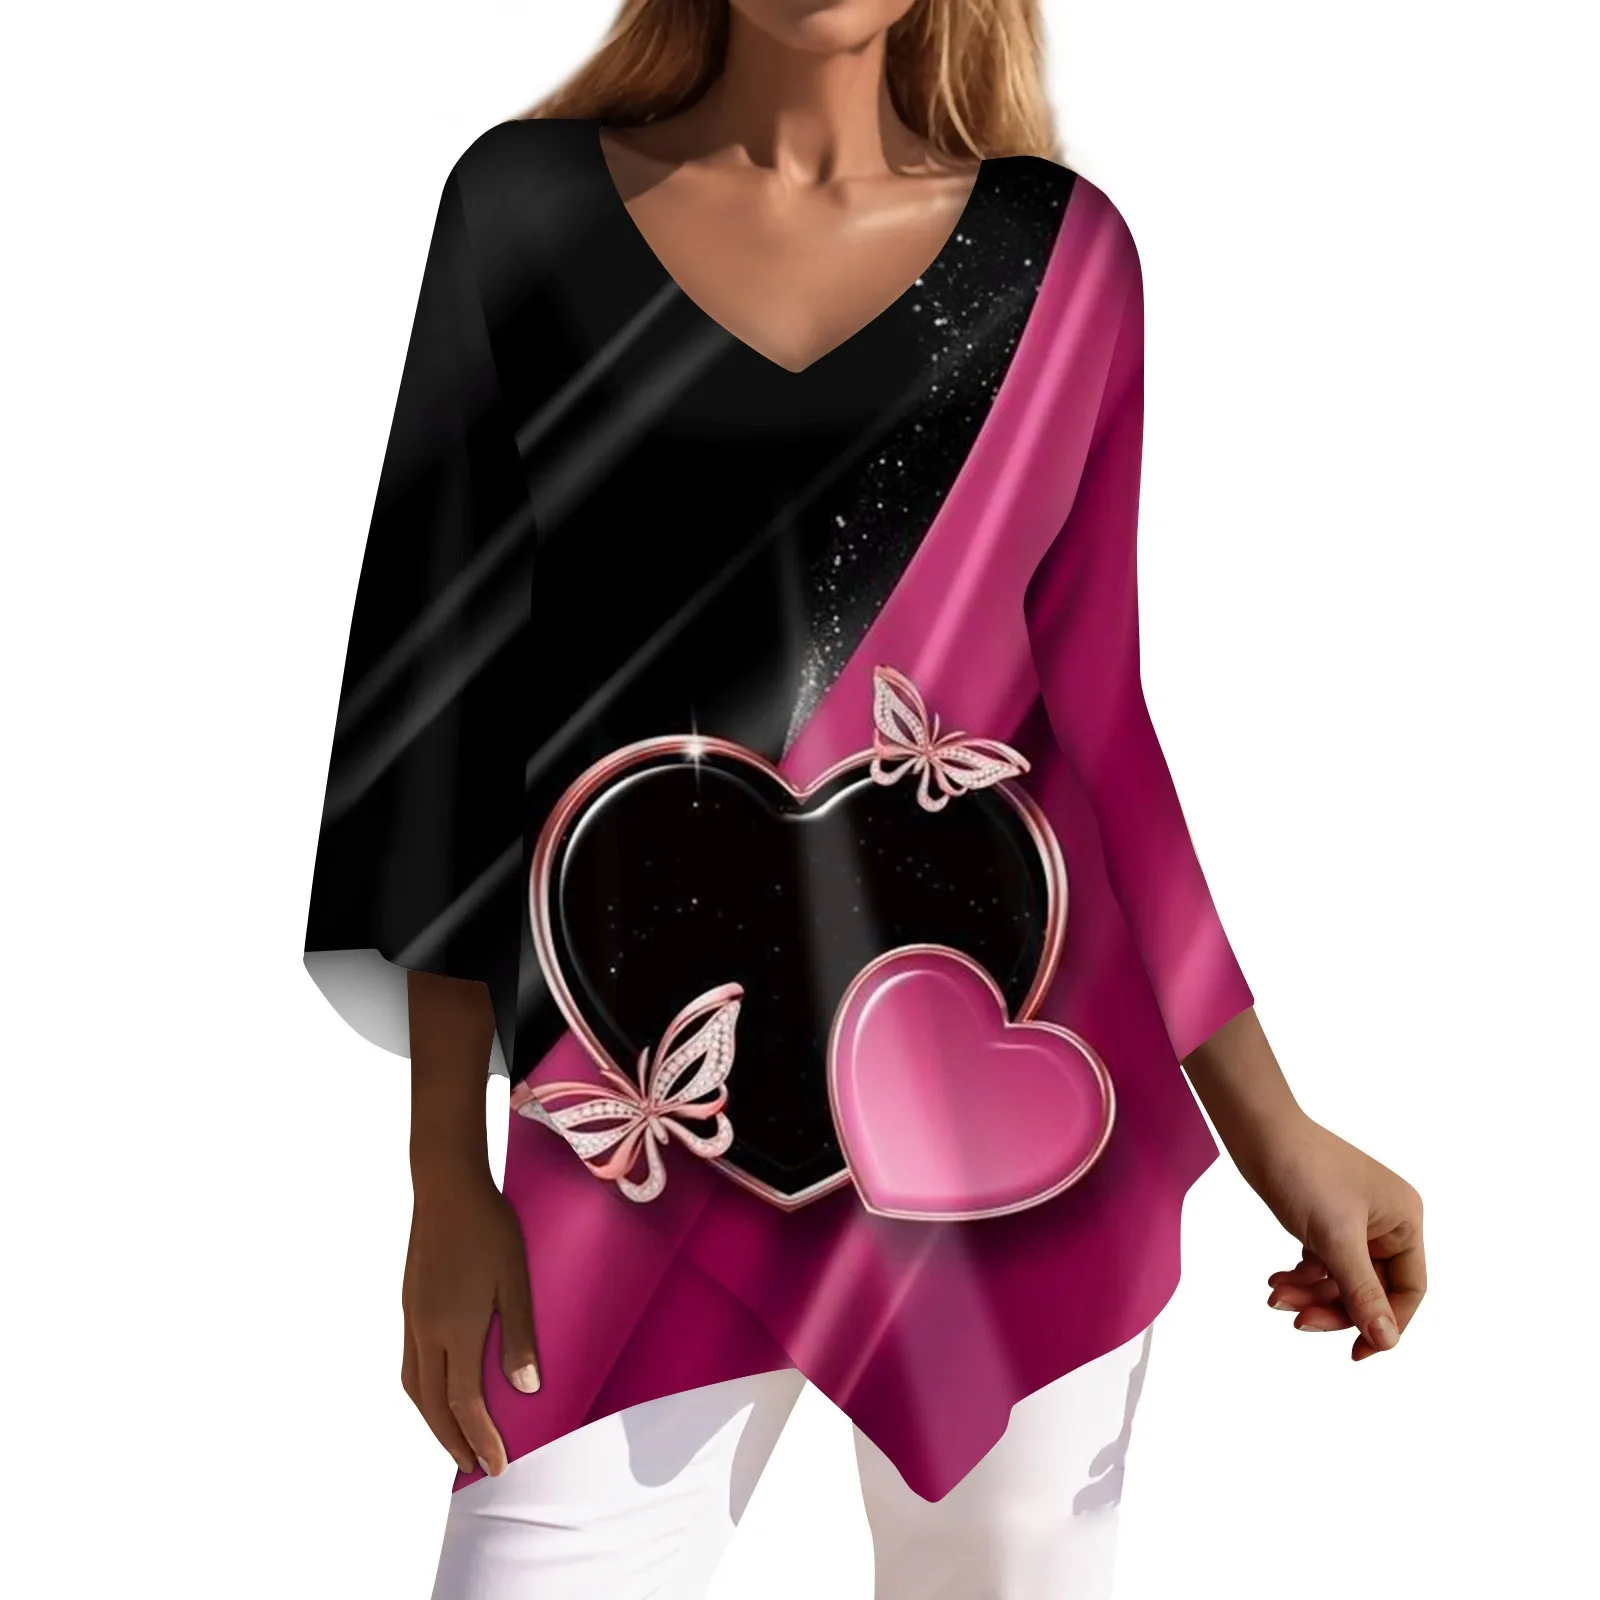 Женская рубашка Casual vestidos para mujer elegante, Свободные Рубашки с рукавом 3/4, Топы с V-образным вырезом и Принтом на День Святого Валентина, отзывы о многих видах одежды